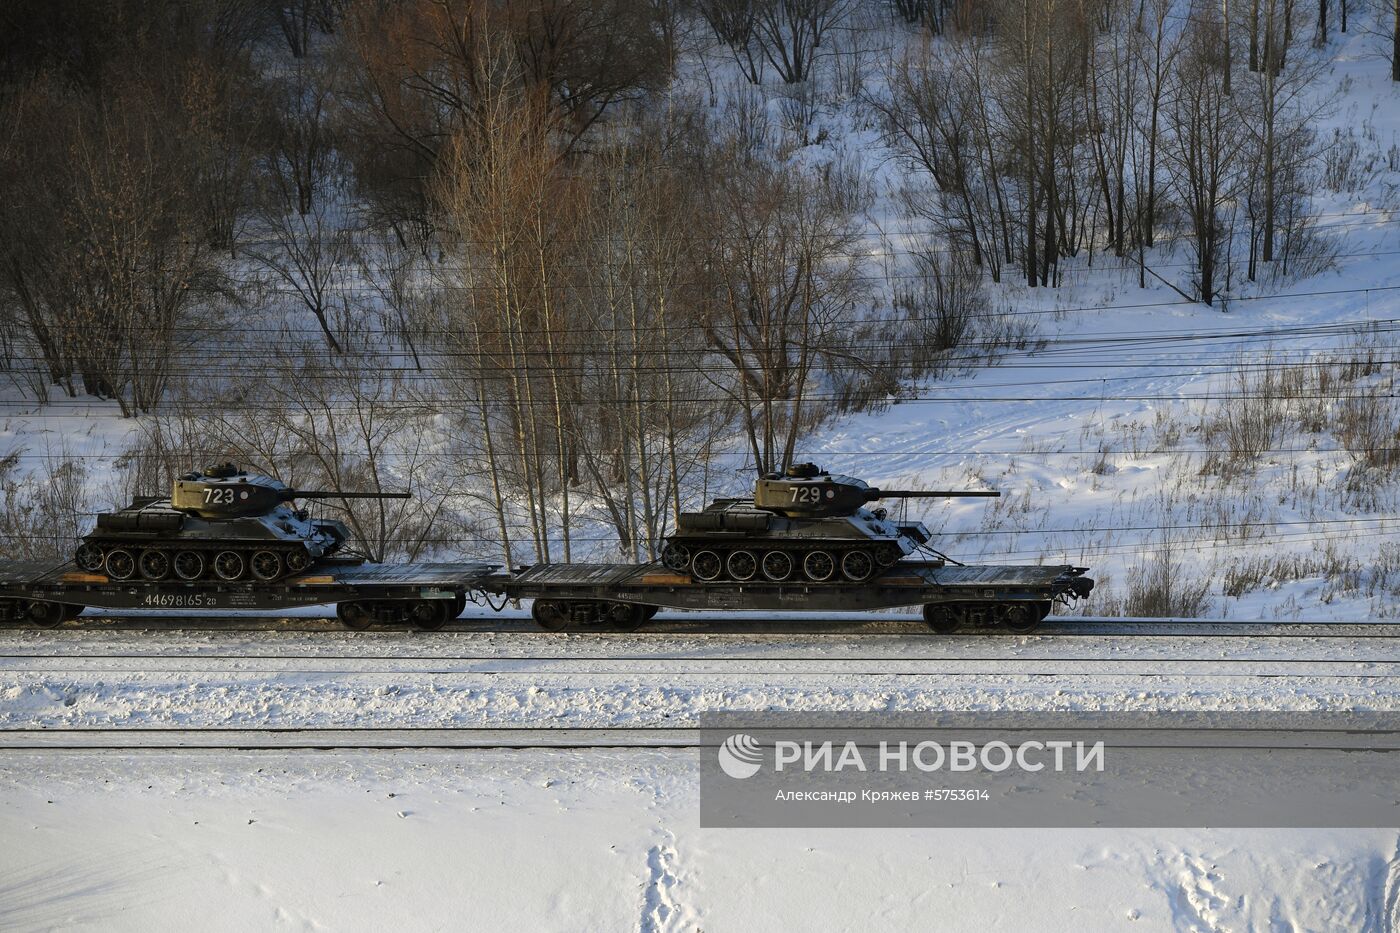 Прибытие эшелона с танками Т-34 в Новосибирск